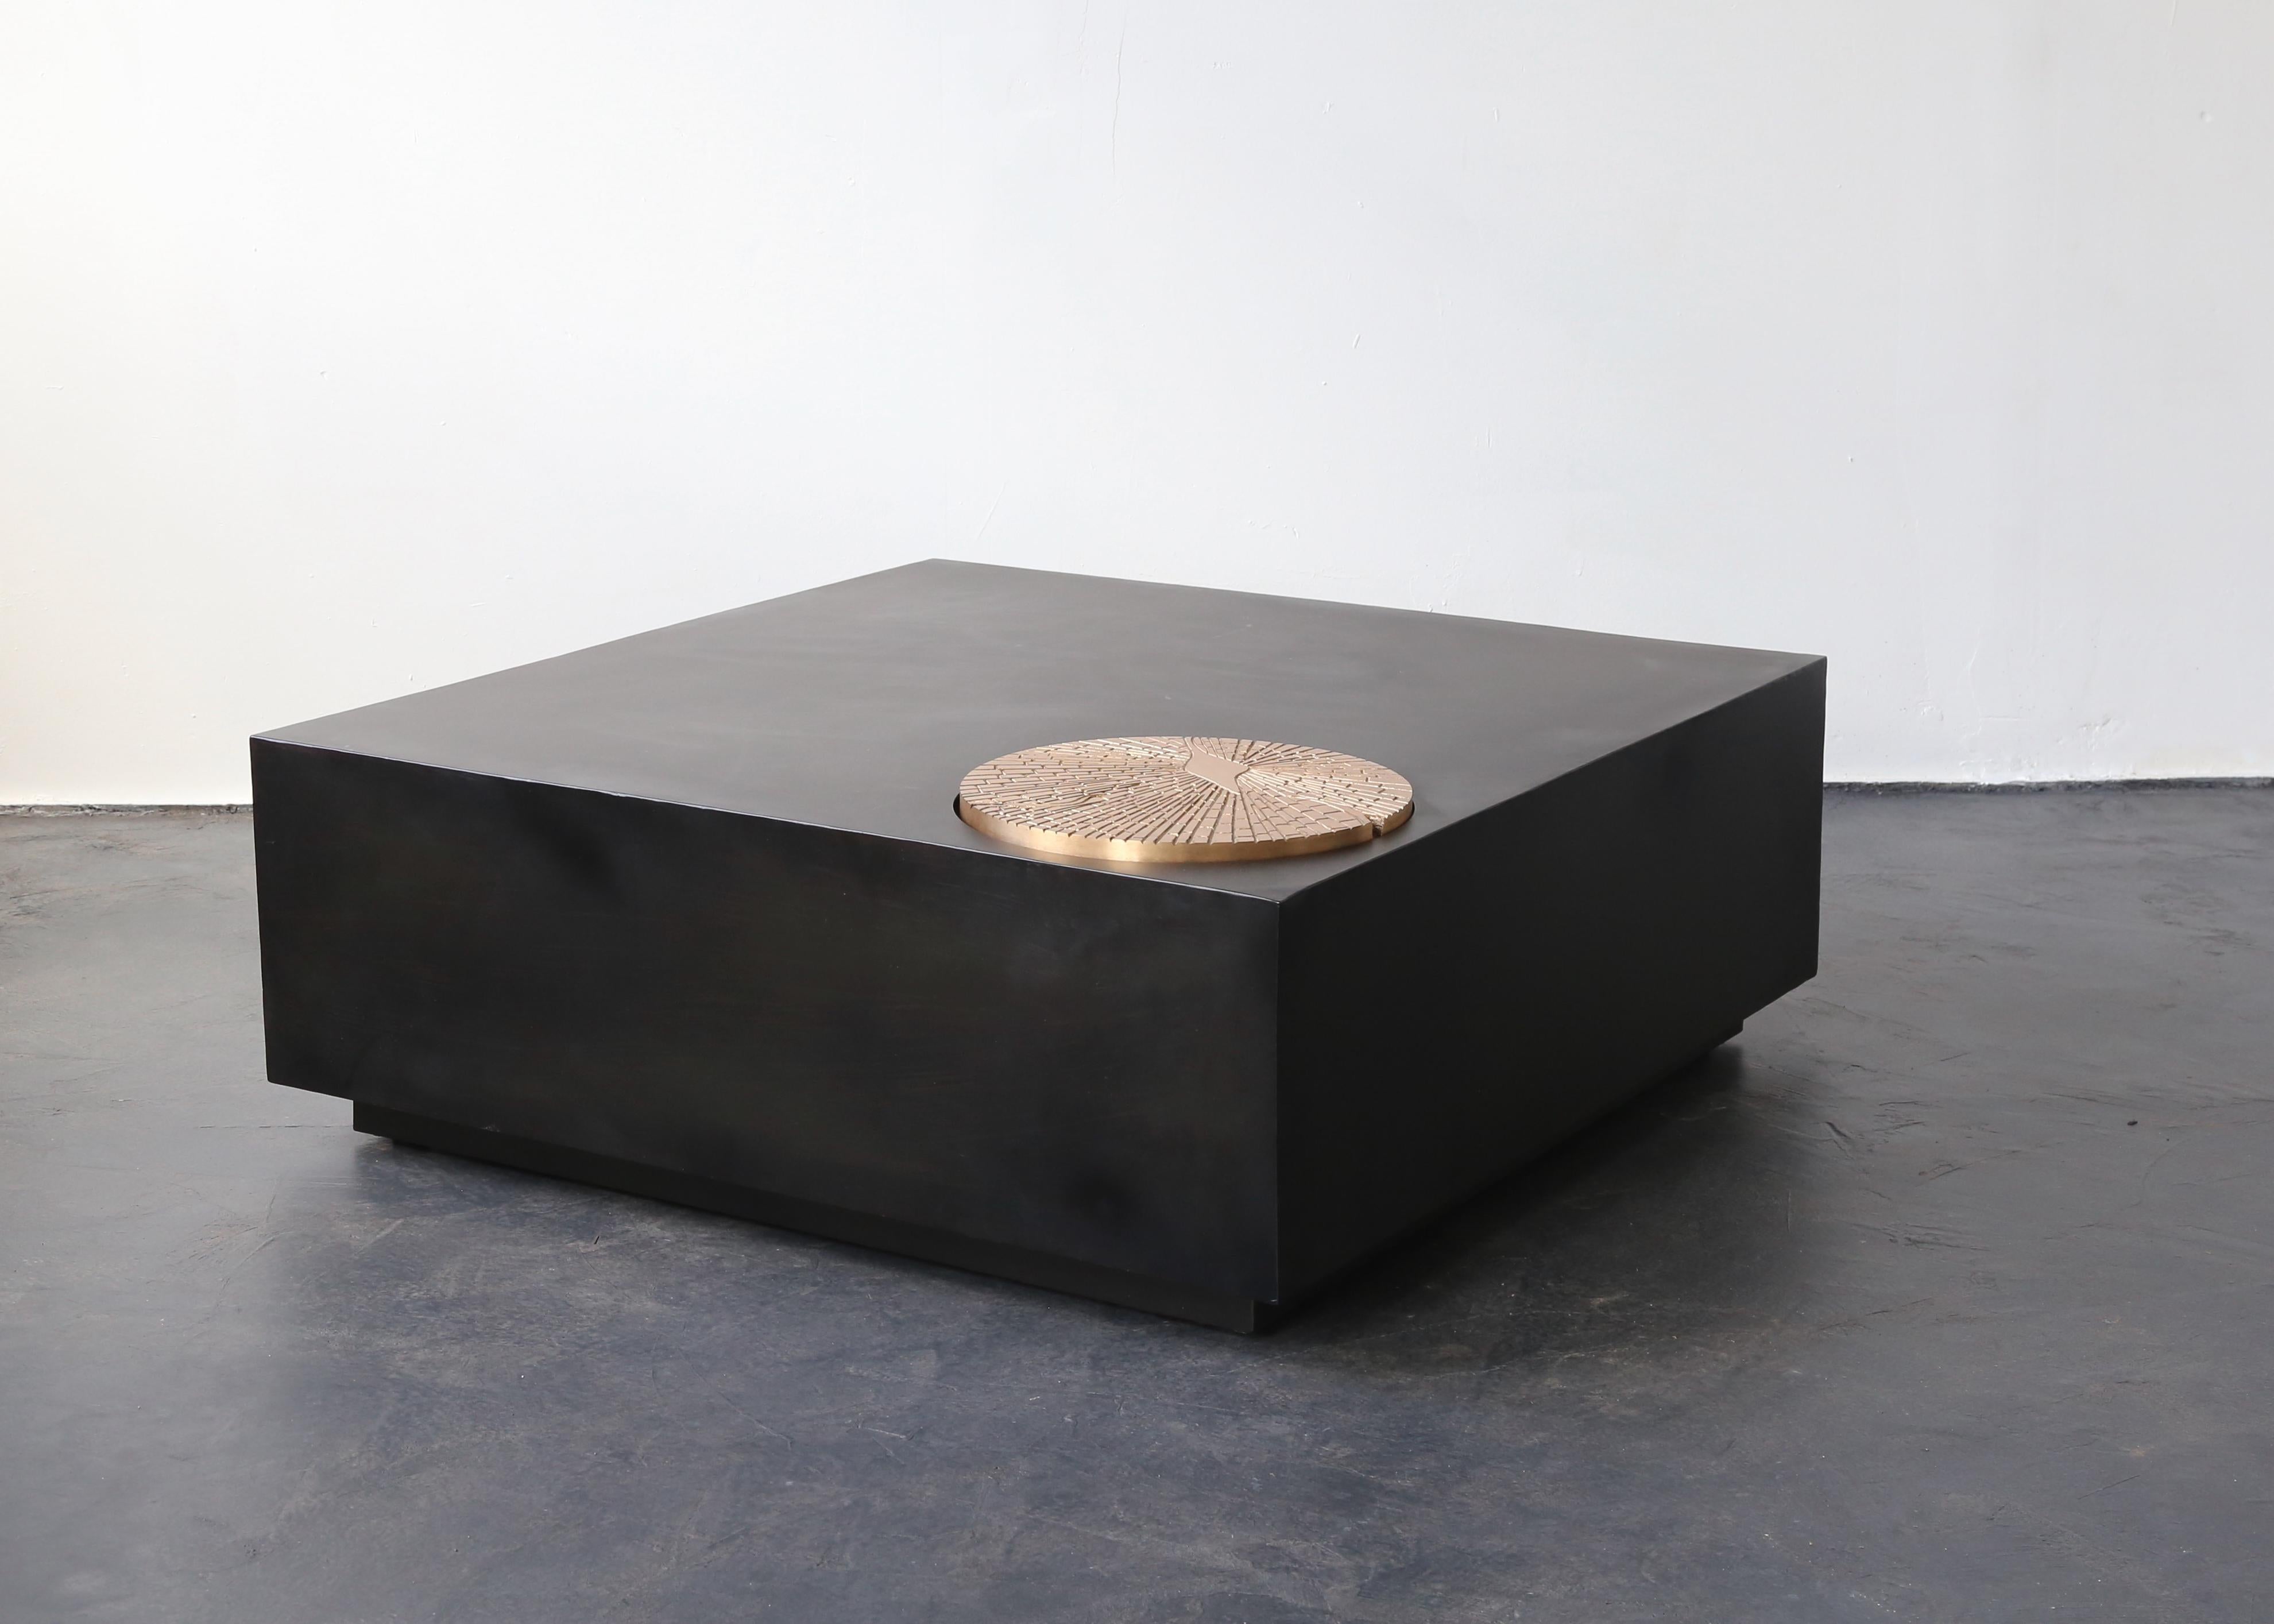 La table Paolo se compose d'un cadre en acier disponible dans n'importe quelle forme, taille ou finition et d'une plaque ronde en bronze brossé coulé personnalisable. Convient à une utilisation intérieure ou extérieure en fonction des matériaux